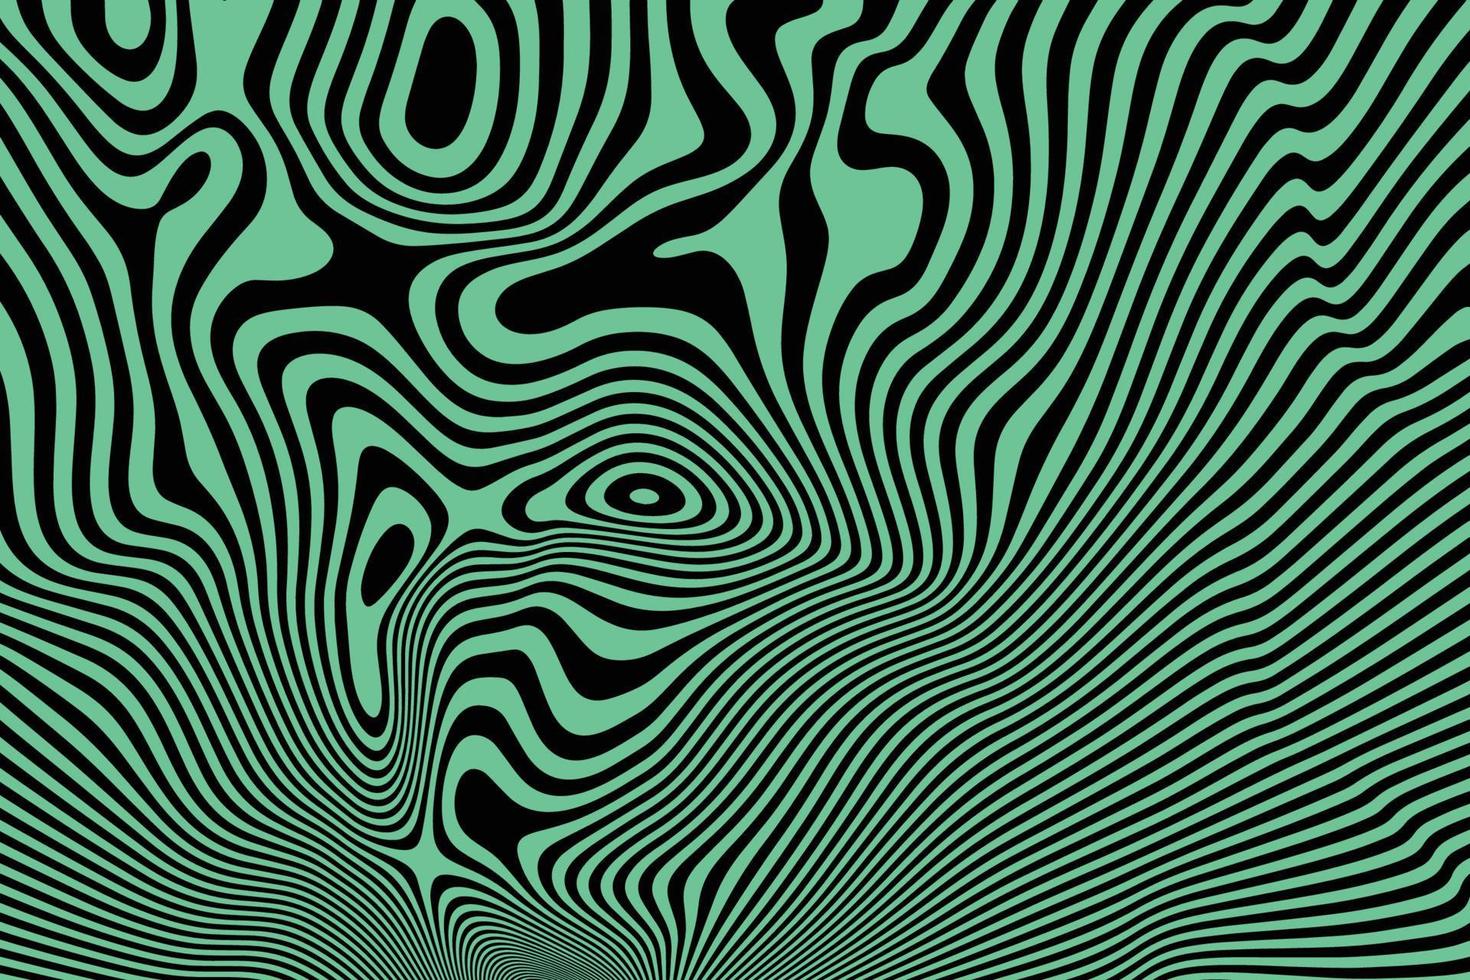 abstracte zwarte en giftige groene vloeiende lijnen achtergrond. stijlvol gebogen vloeibaar patroonoppervlak. abstracte optische illusie kunst vector